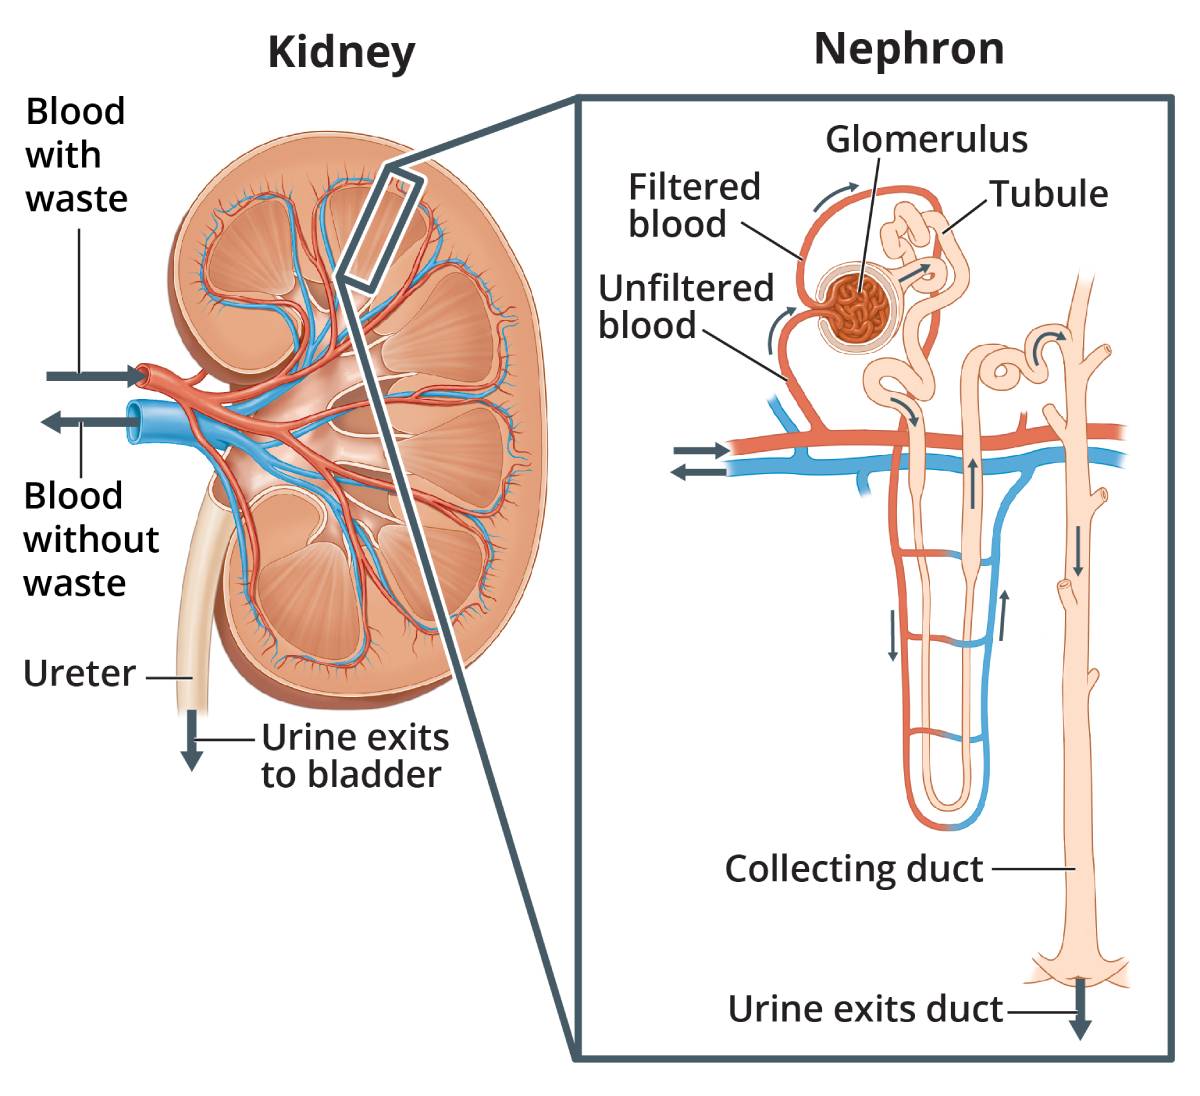 肾脏的横切面，显示血和尿的流动，肾单位的放大图，显示肾小球、肾小管、集合管以及血和尿流。